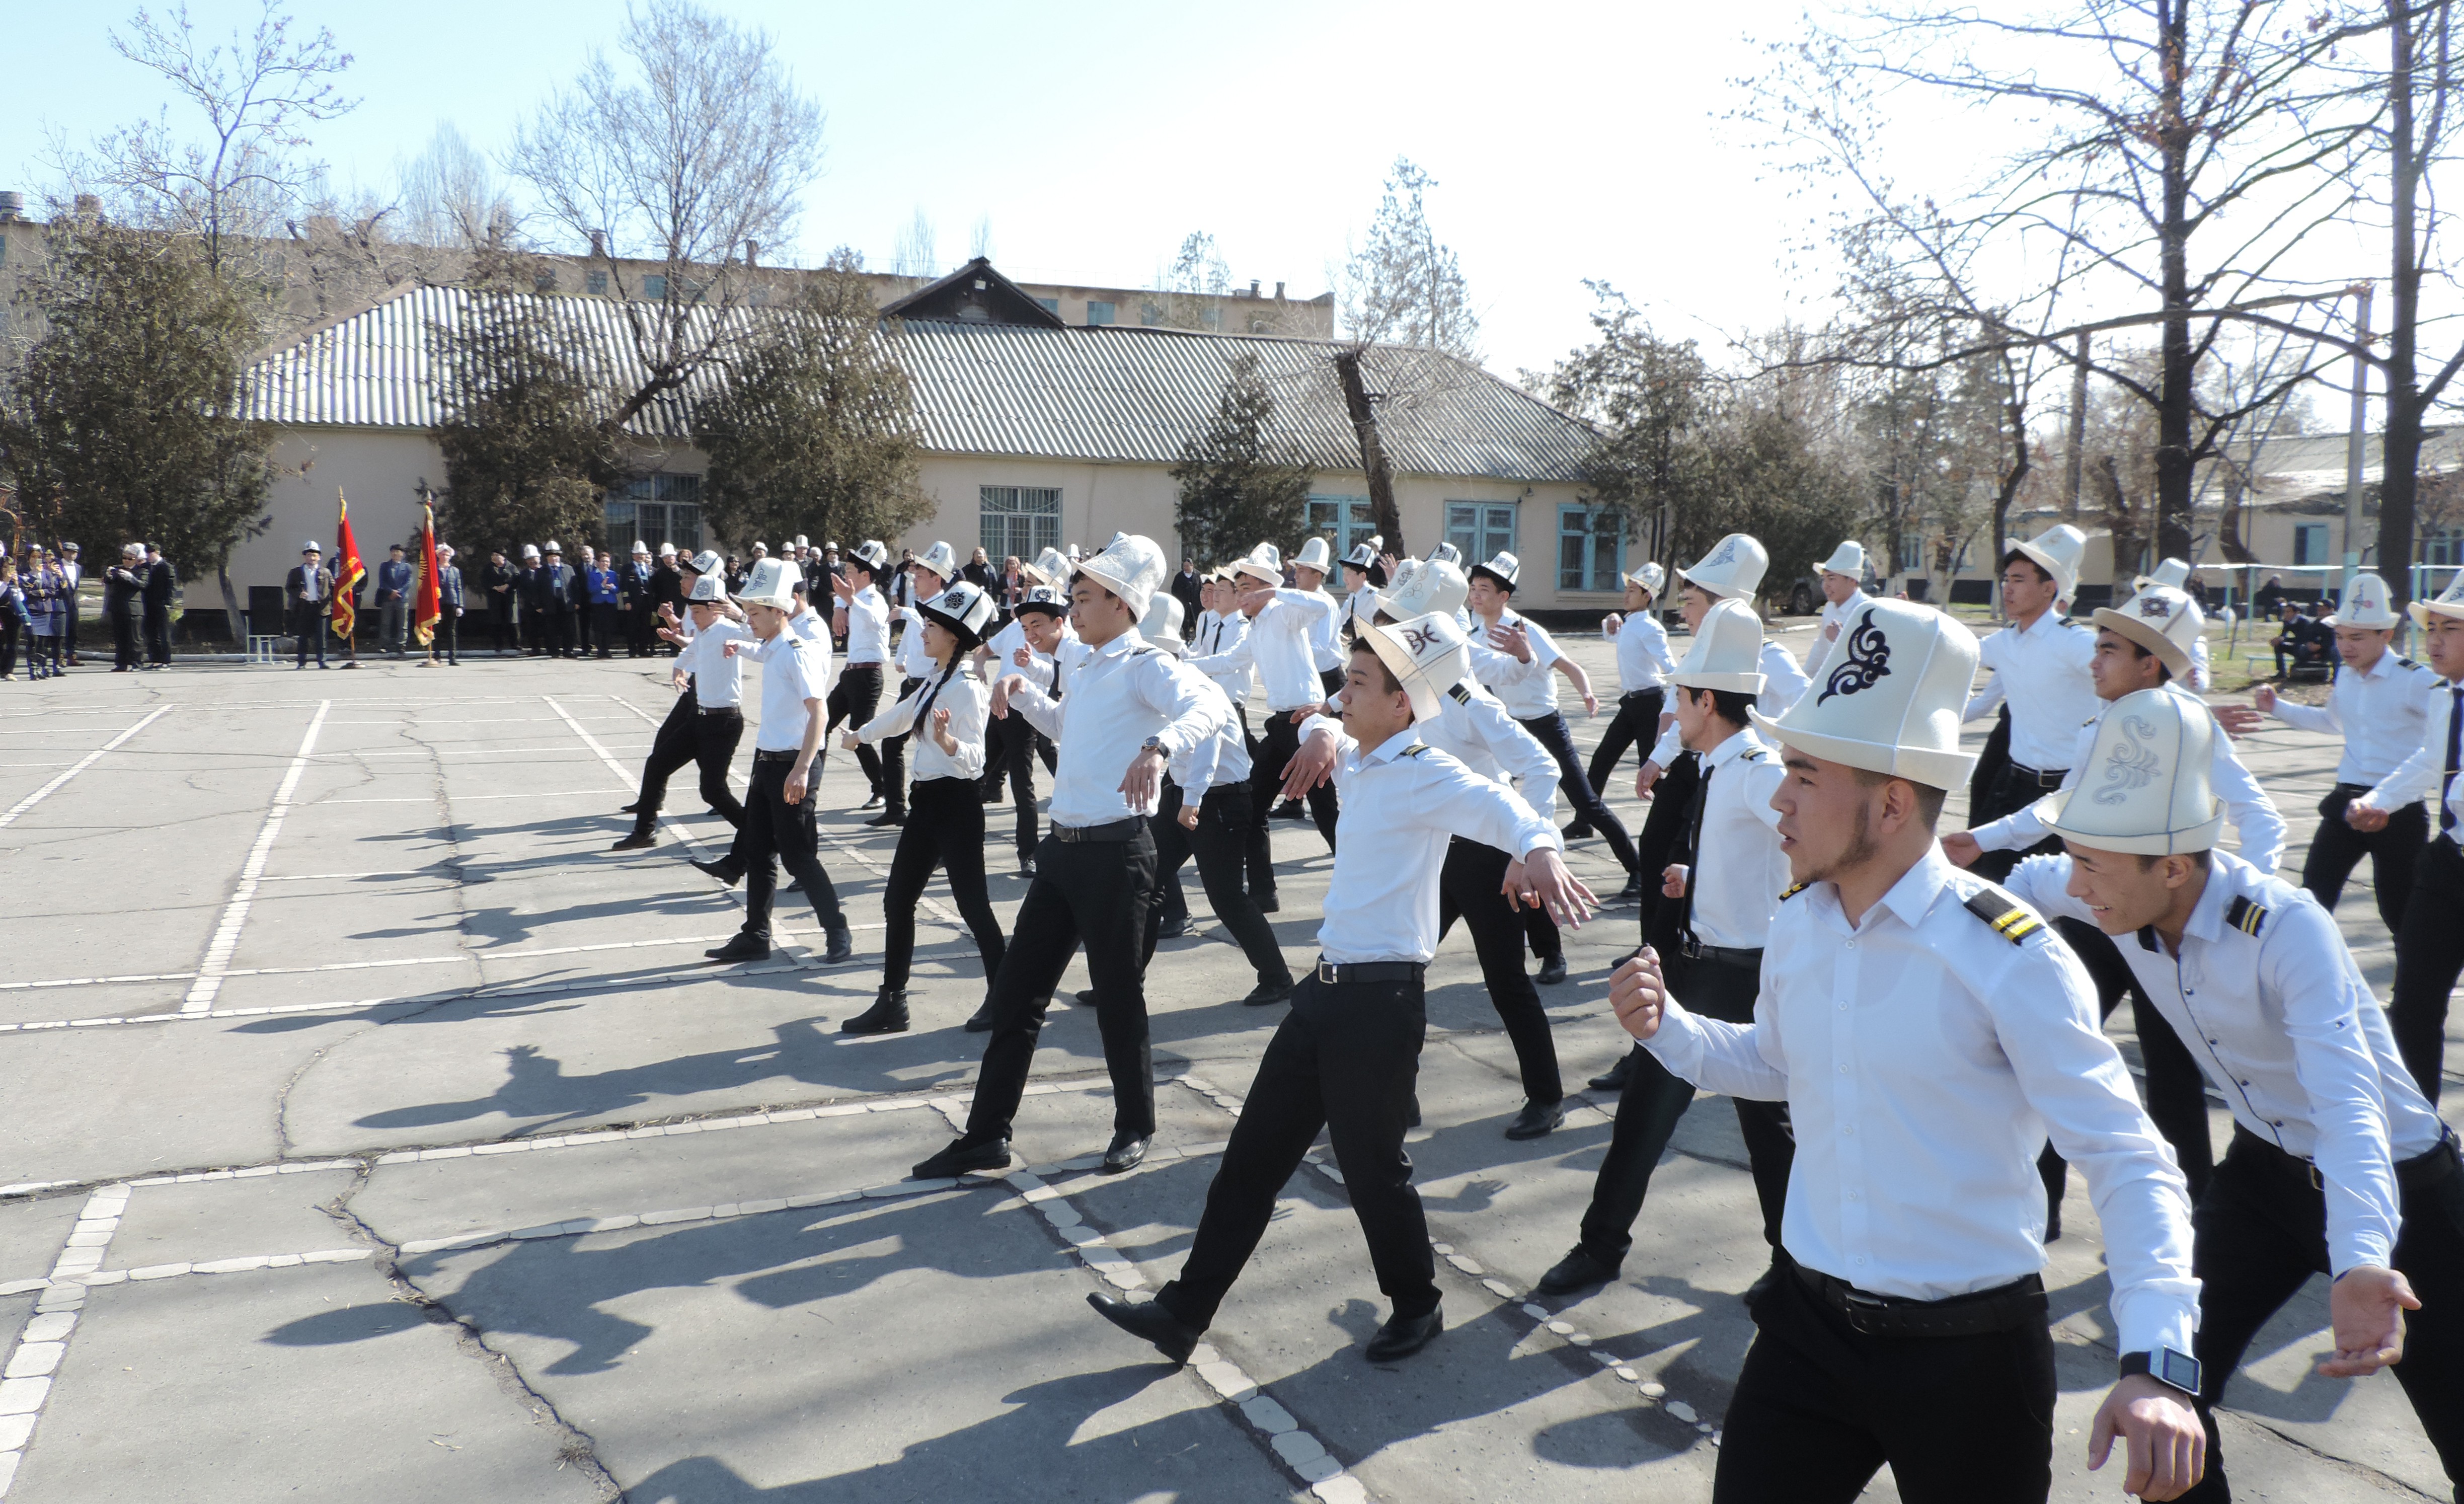 5 марта в Кыргызстане отмечается День Ак калпака (Ак калпак күнү). Был организован флешмоб студентами института.